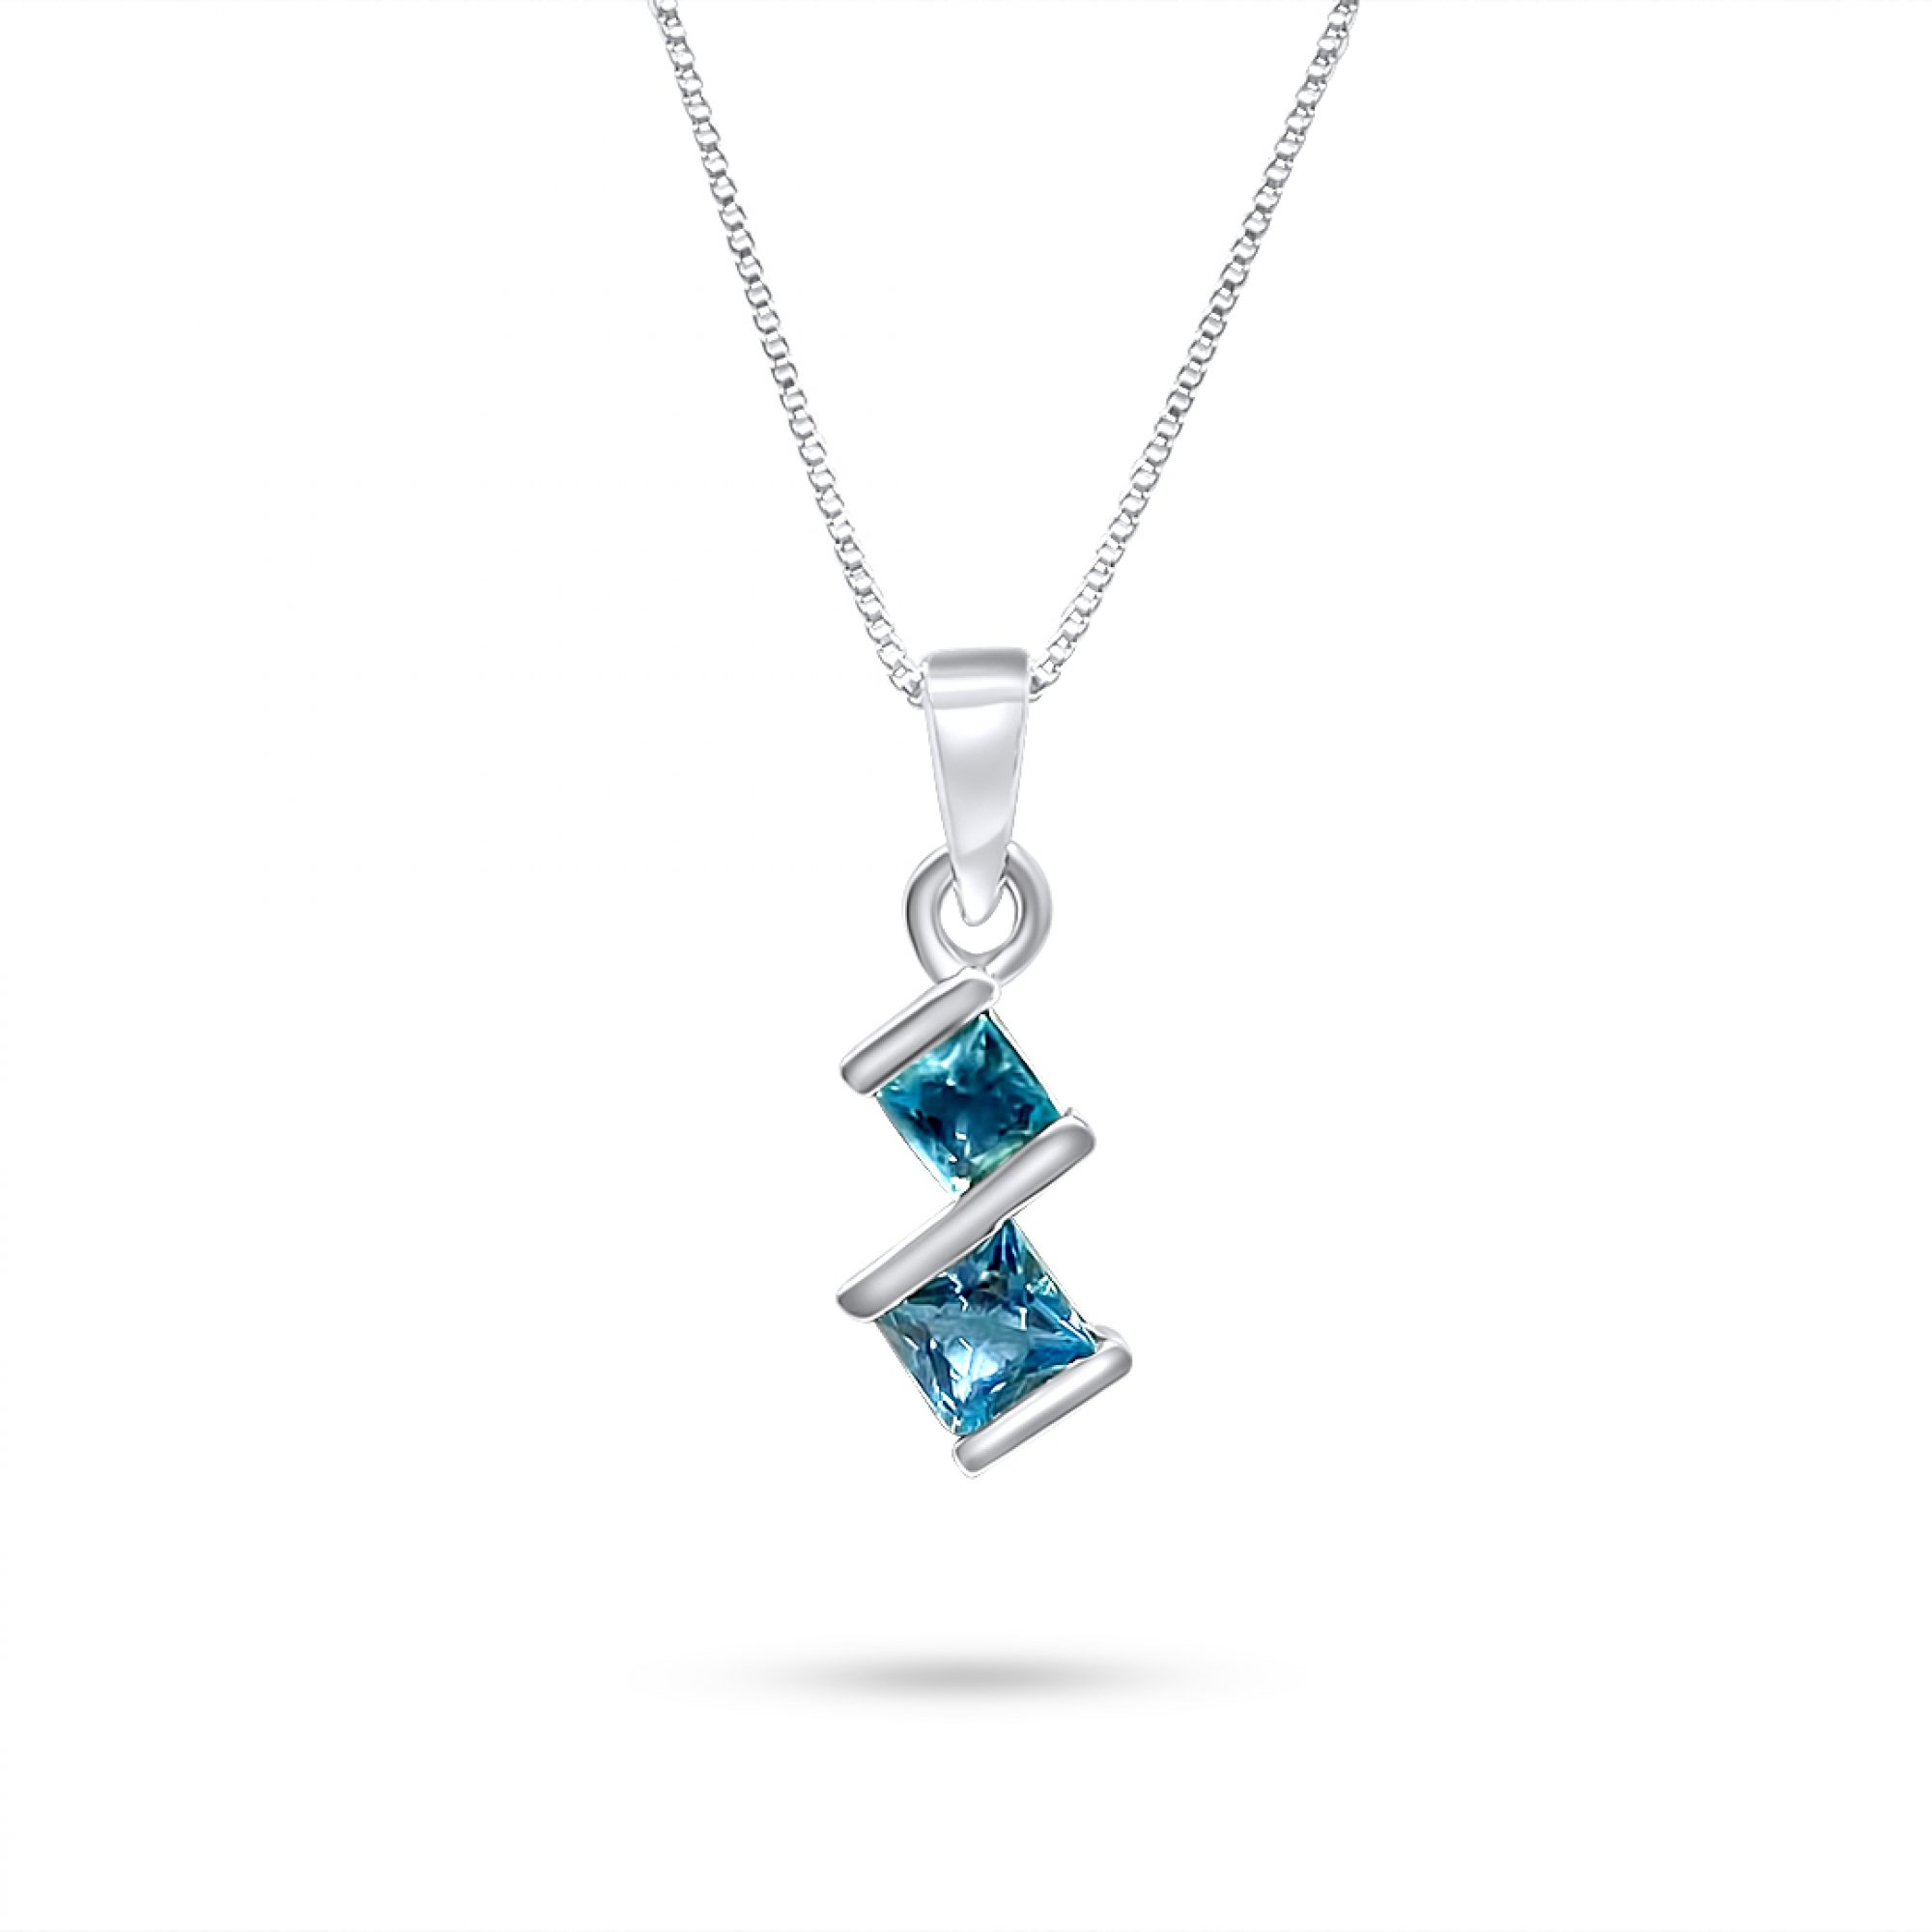 Necklace with aquamarine stones